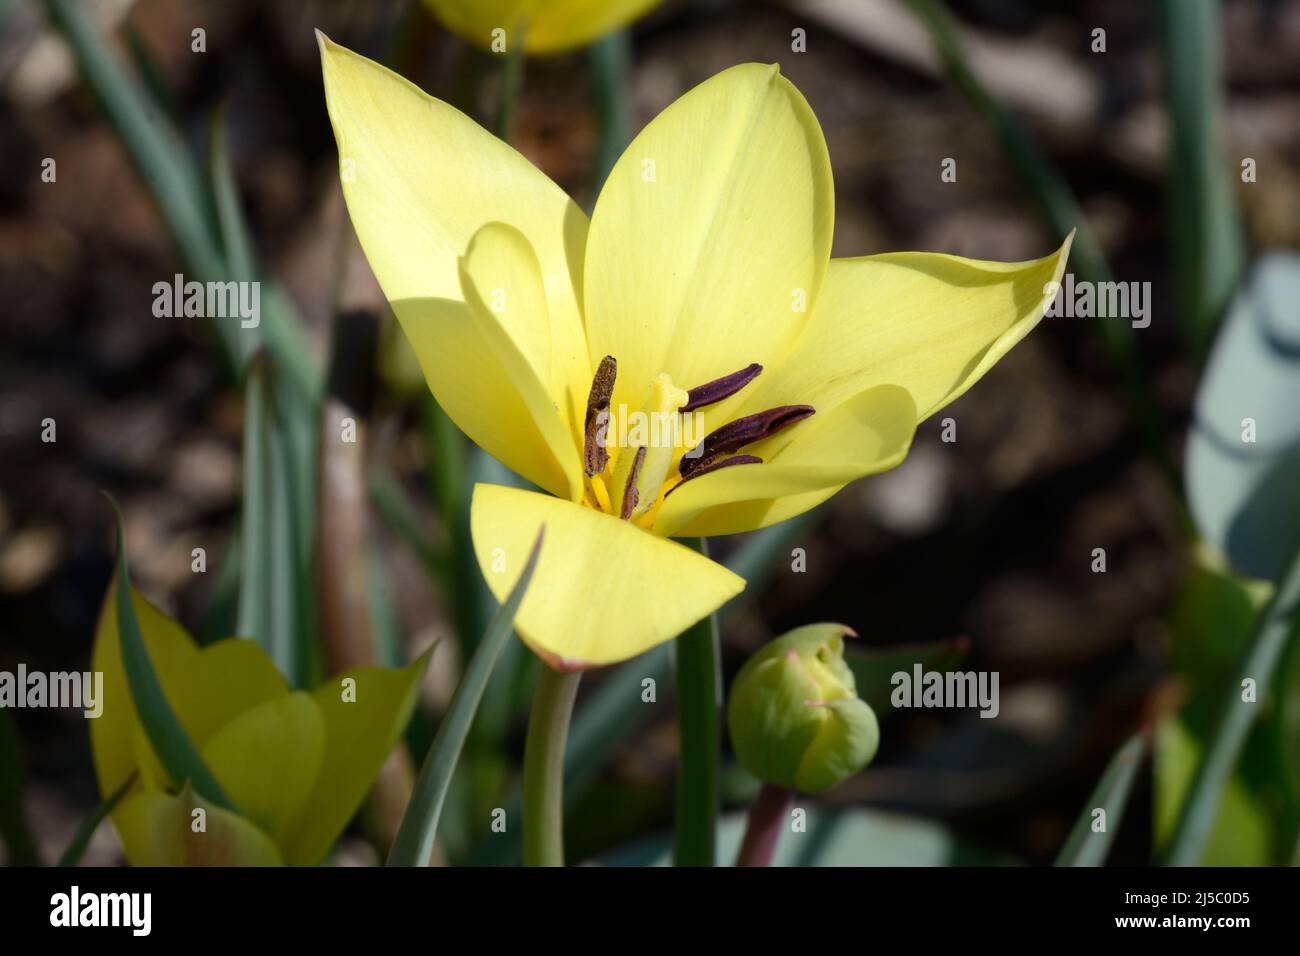 Tulipa Honky-Tonk Tilip Honky Tonk fleur de tulipe jaune douce avec des feuilles vertes grises Banque D'Images